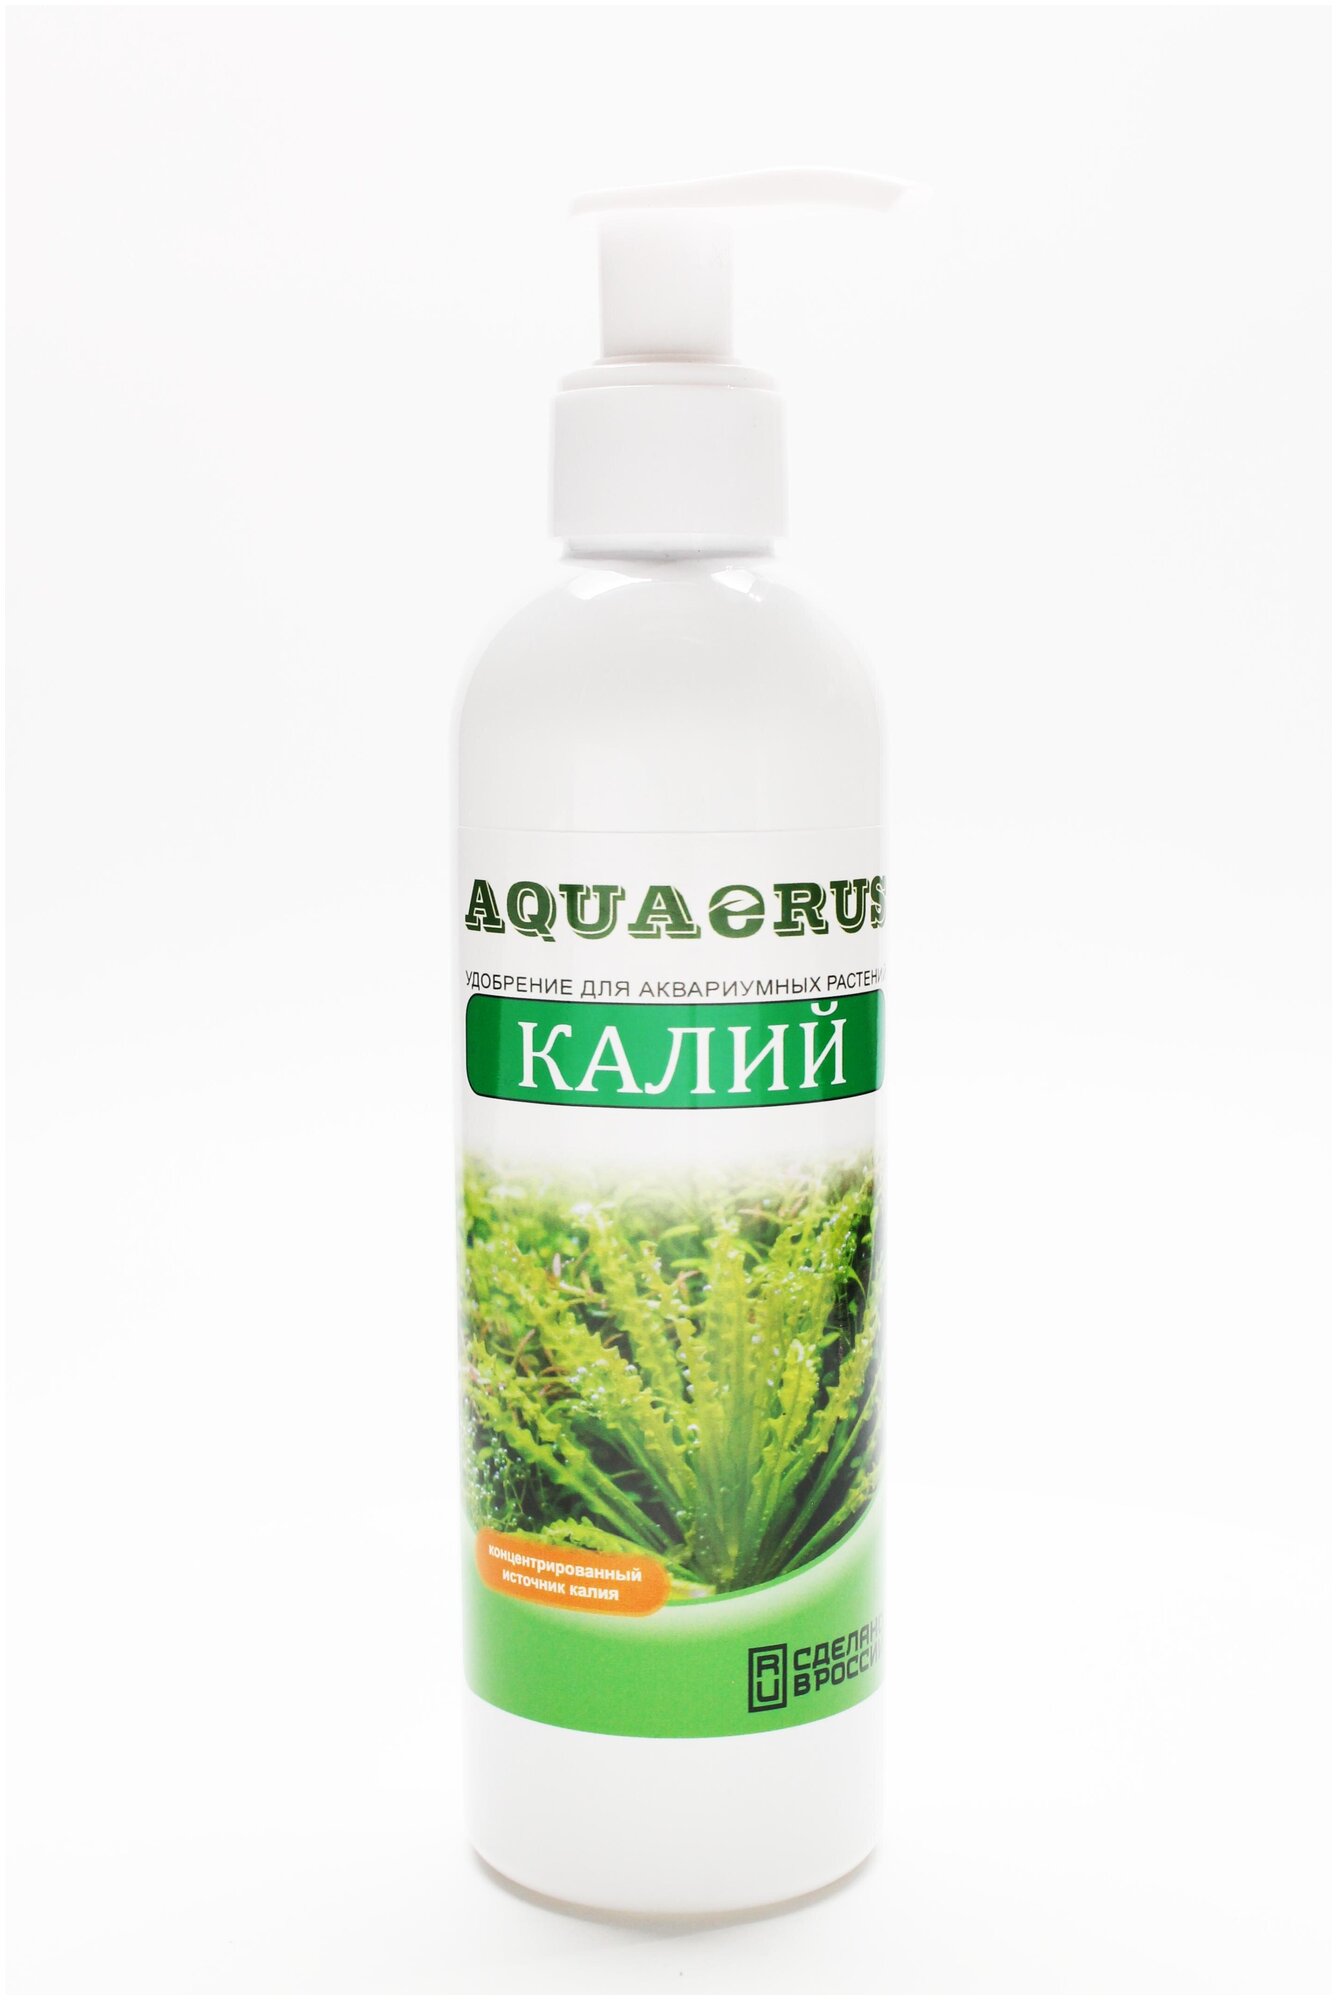 AQUAERUS, удобрение для аквариумных растений калий, 250 mL